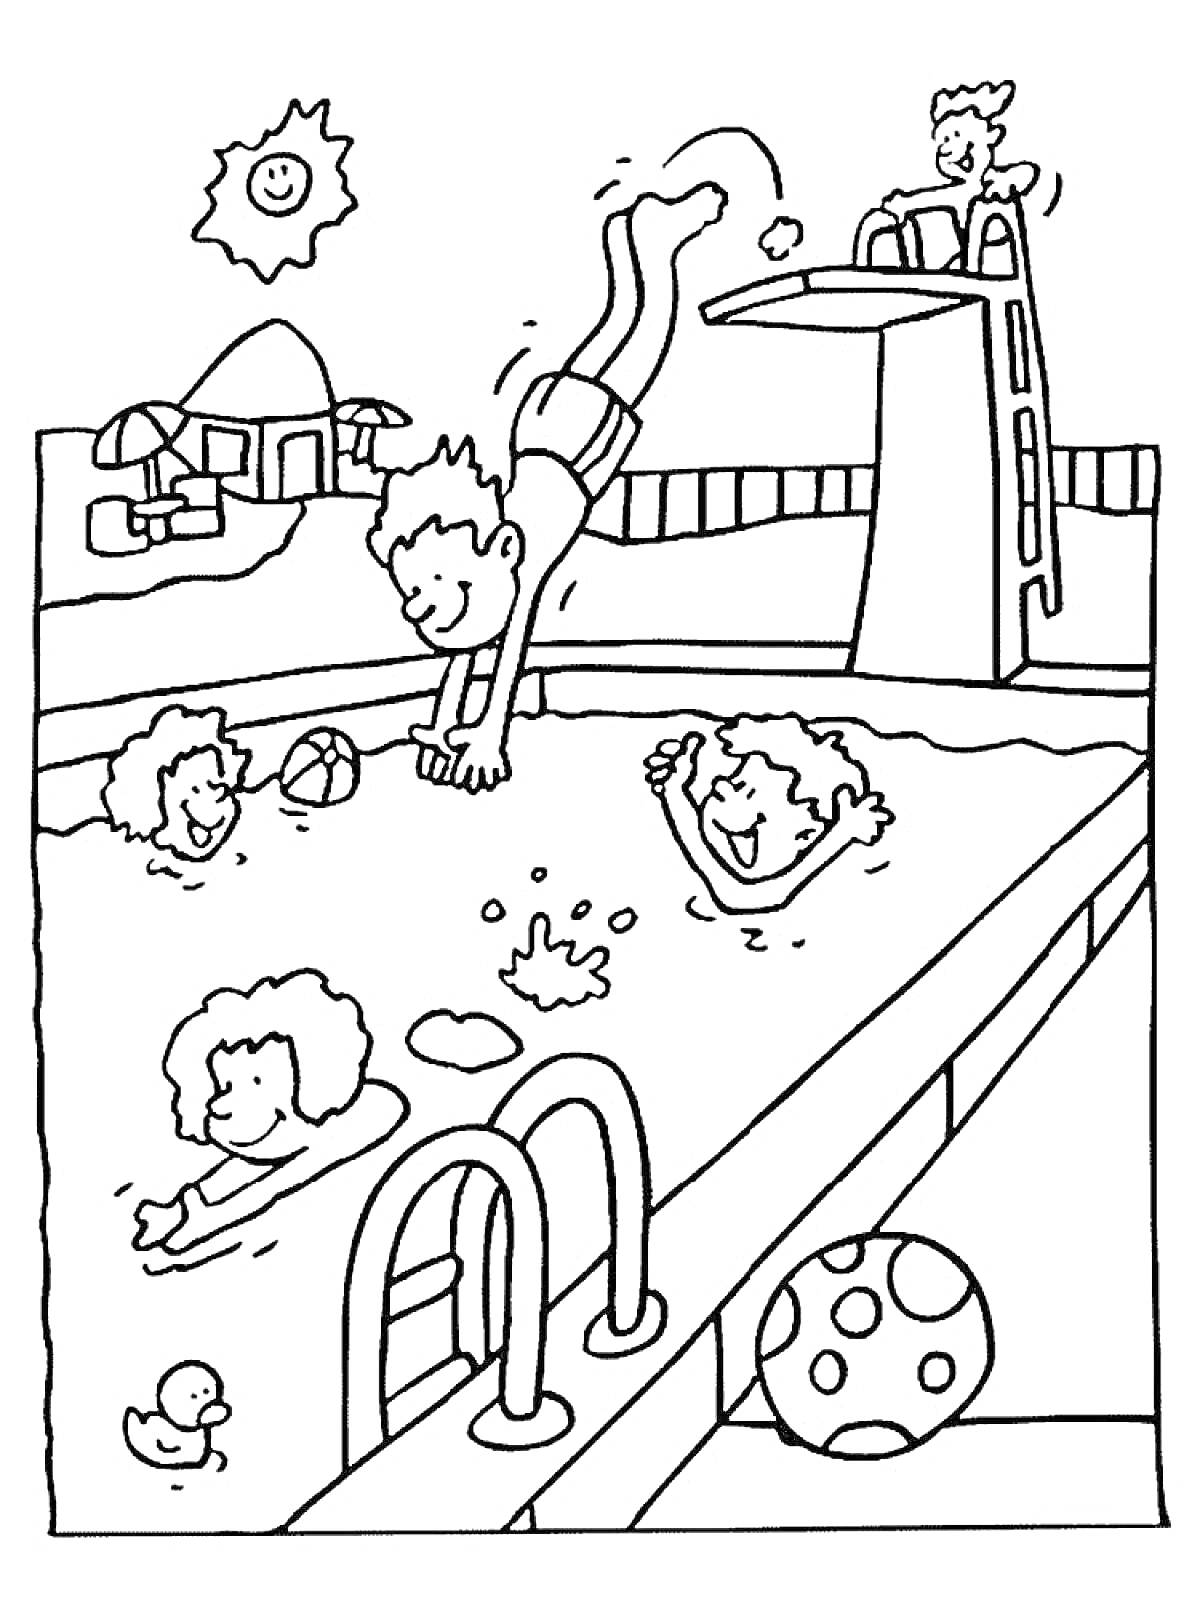 Дети плавают и прыгают в бассейн аквапарка, водная горка, солнце, улыбающийся шар, утка